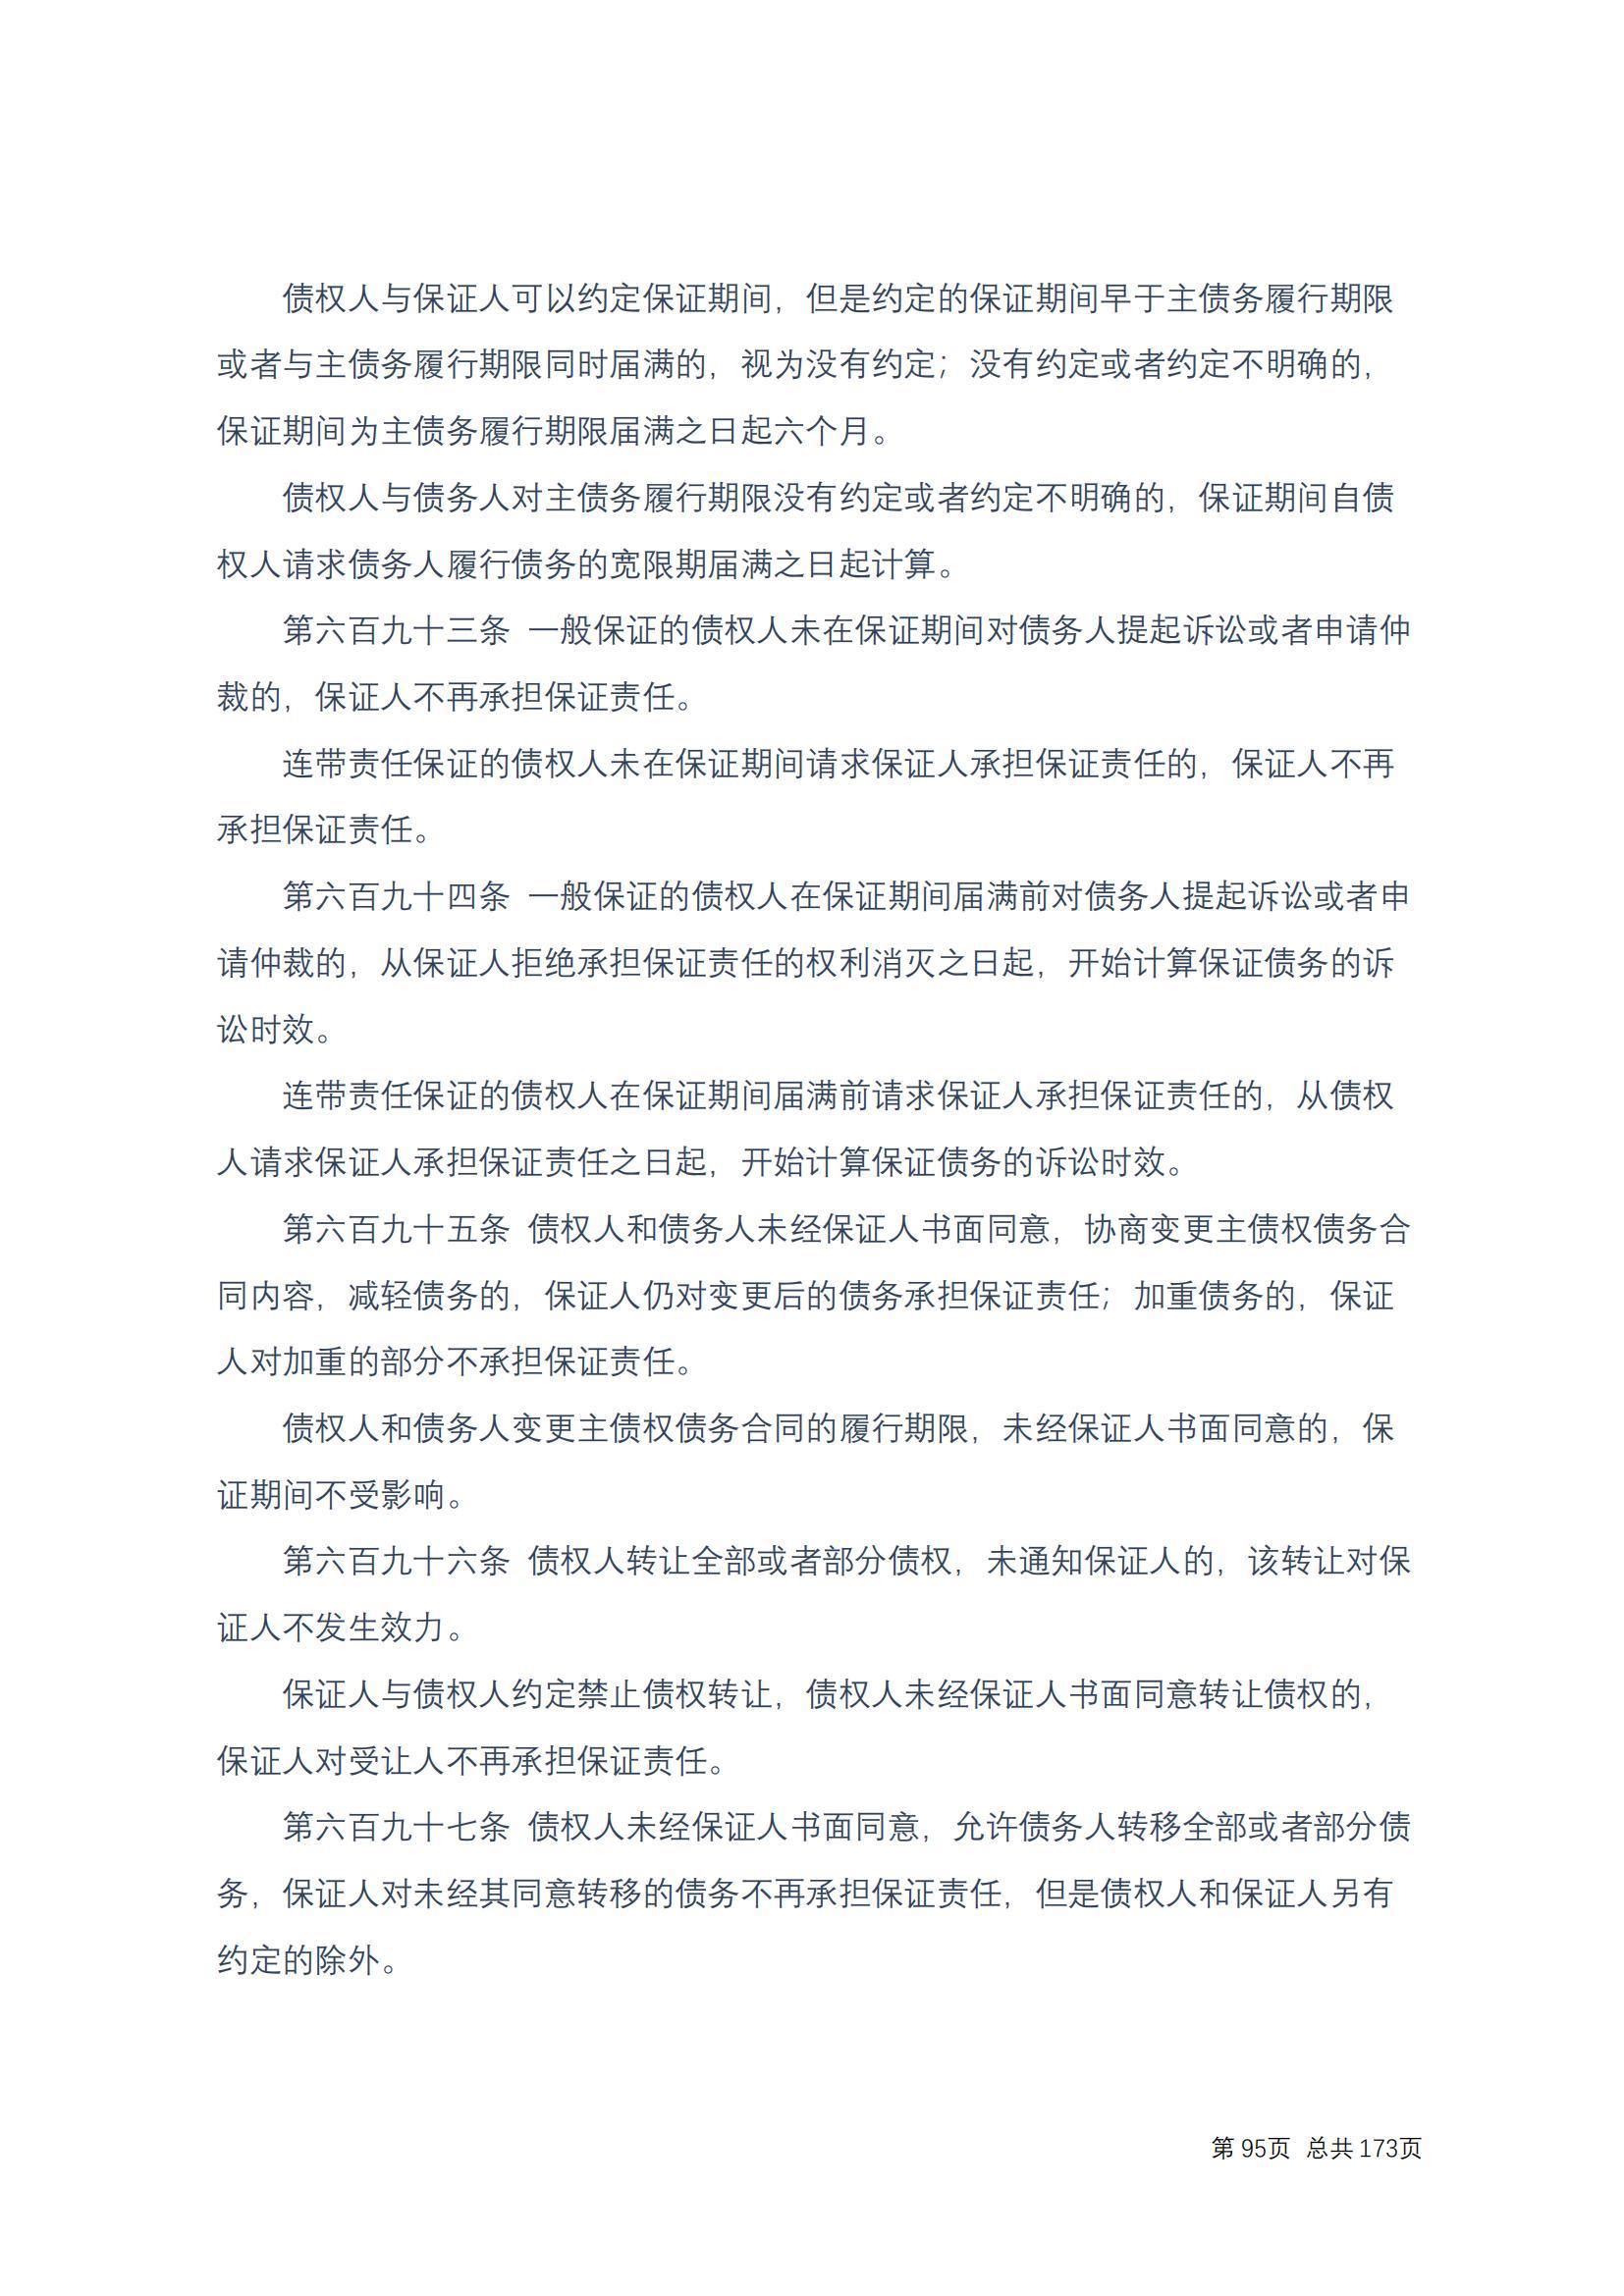 中华人民共和国民法典 修改过_94